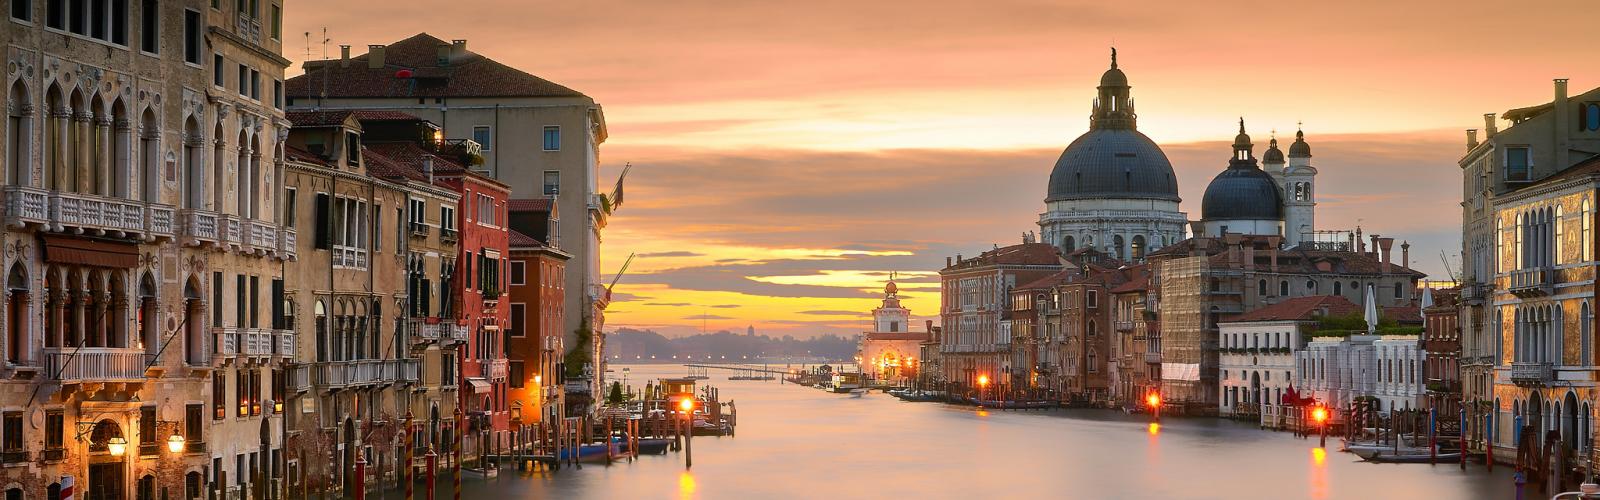 Tronchetto - San Marco Venice